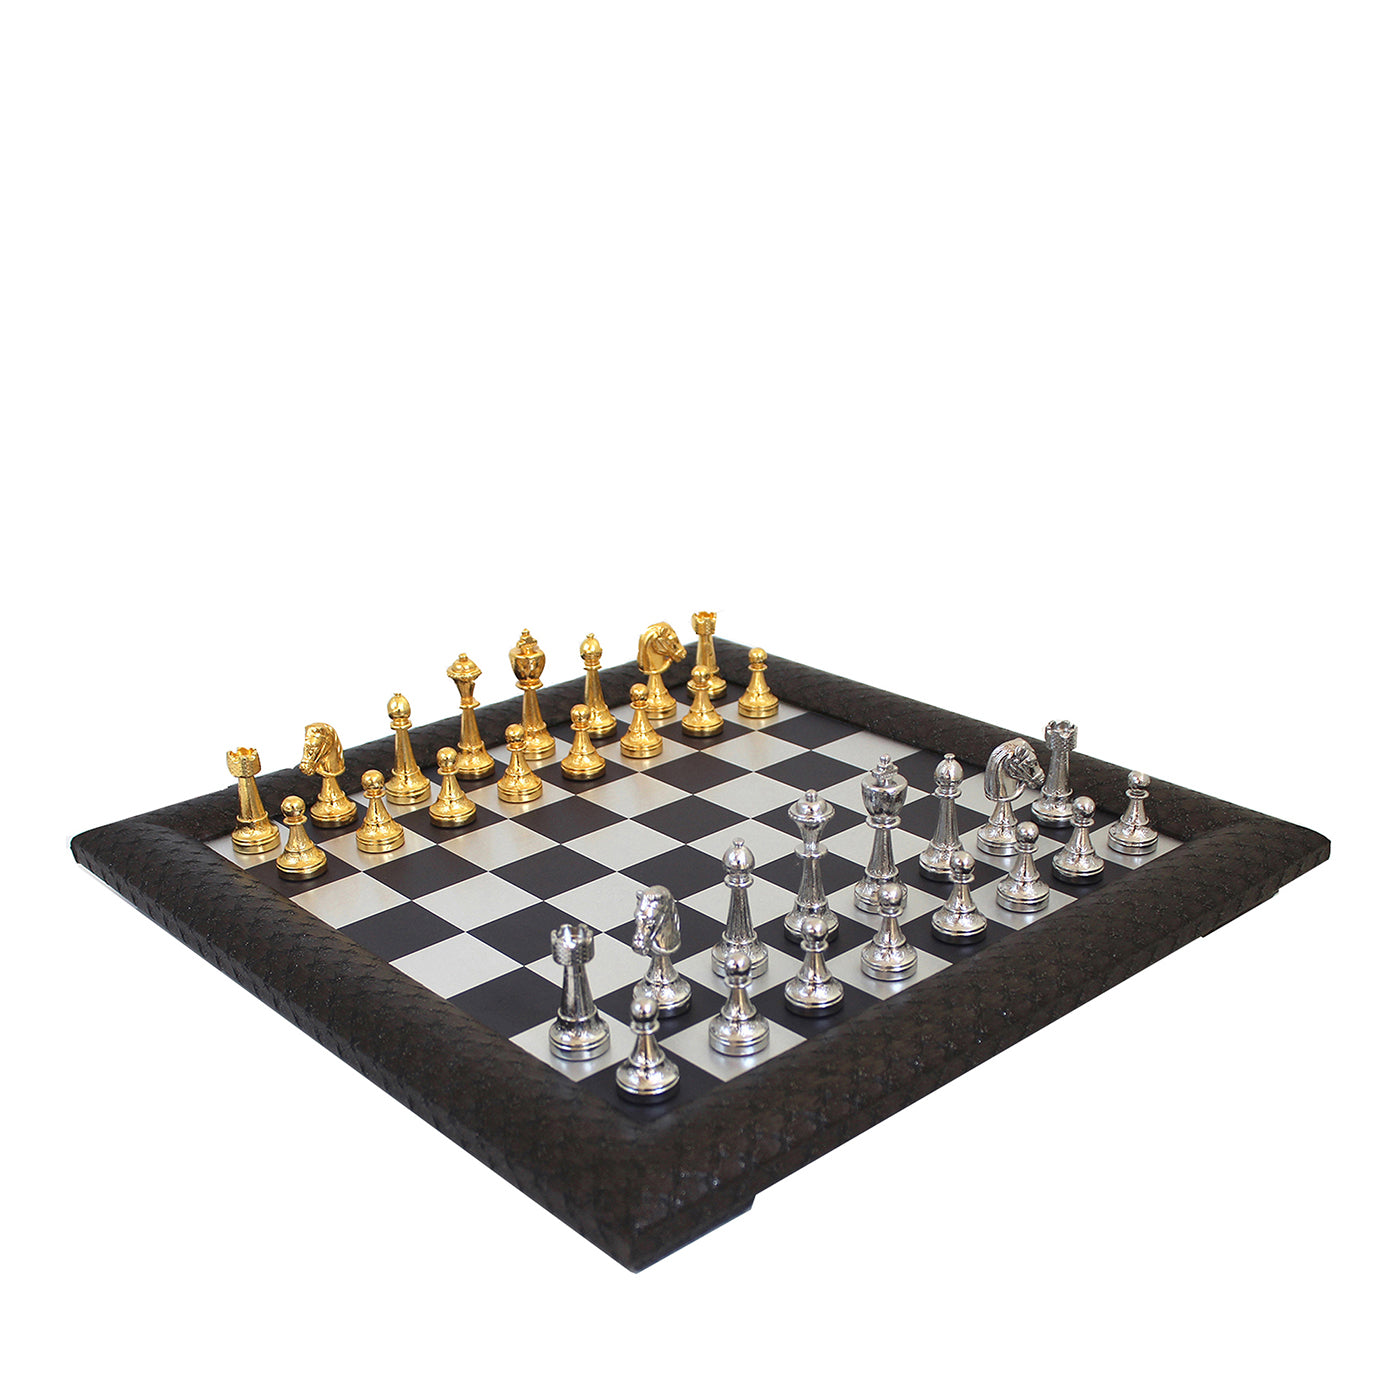 Juego de ajedrez Staunton Elegance - Vista principal